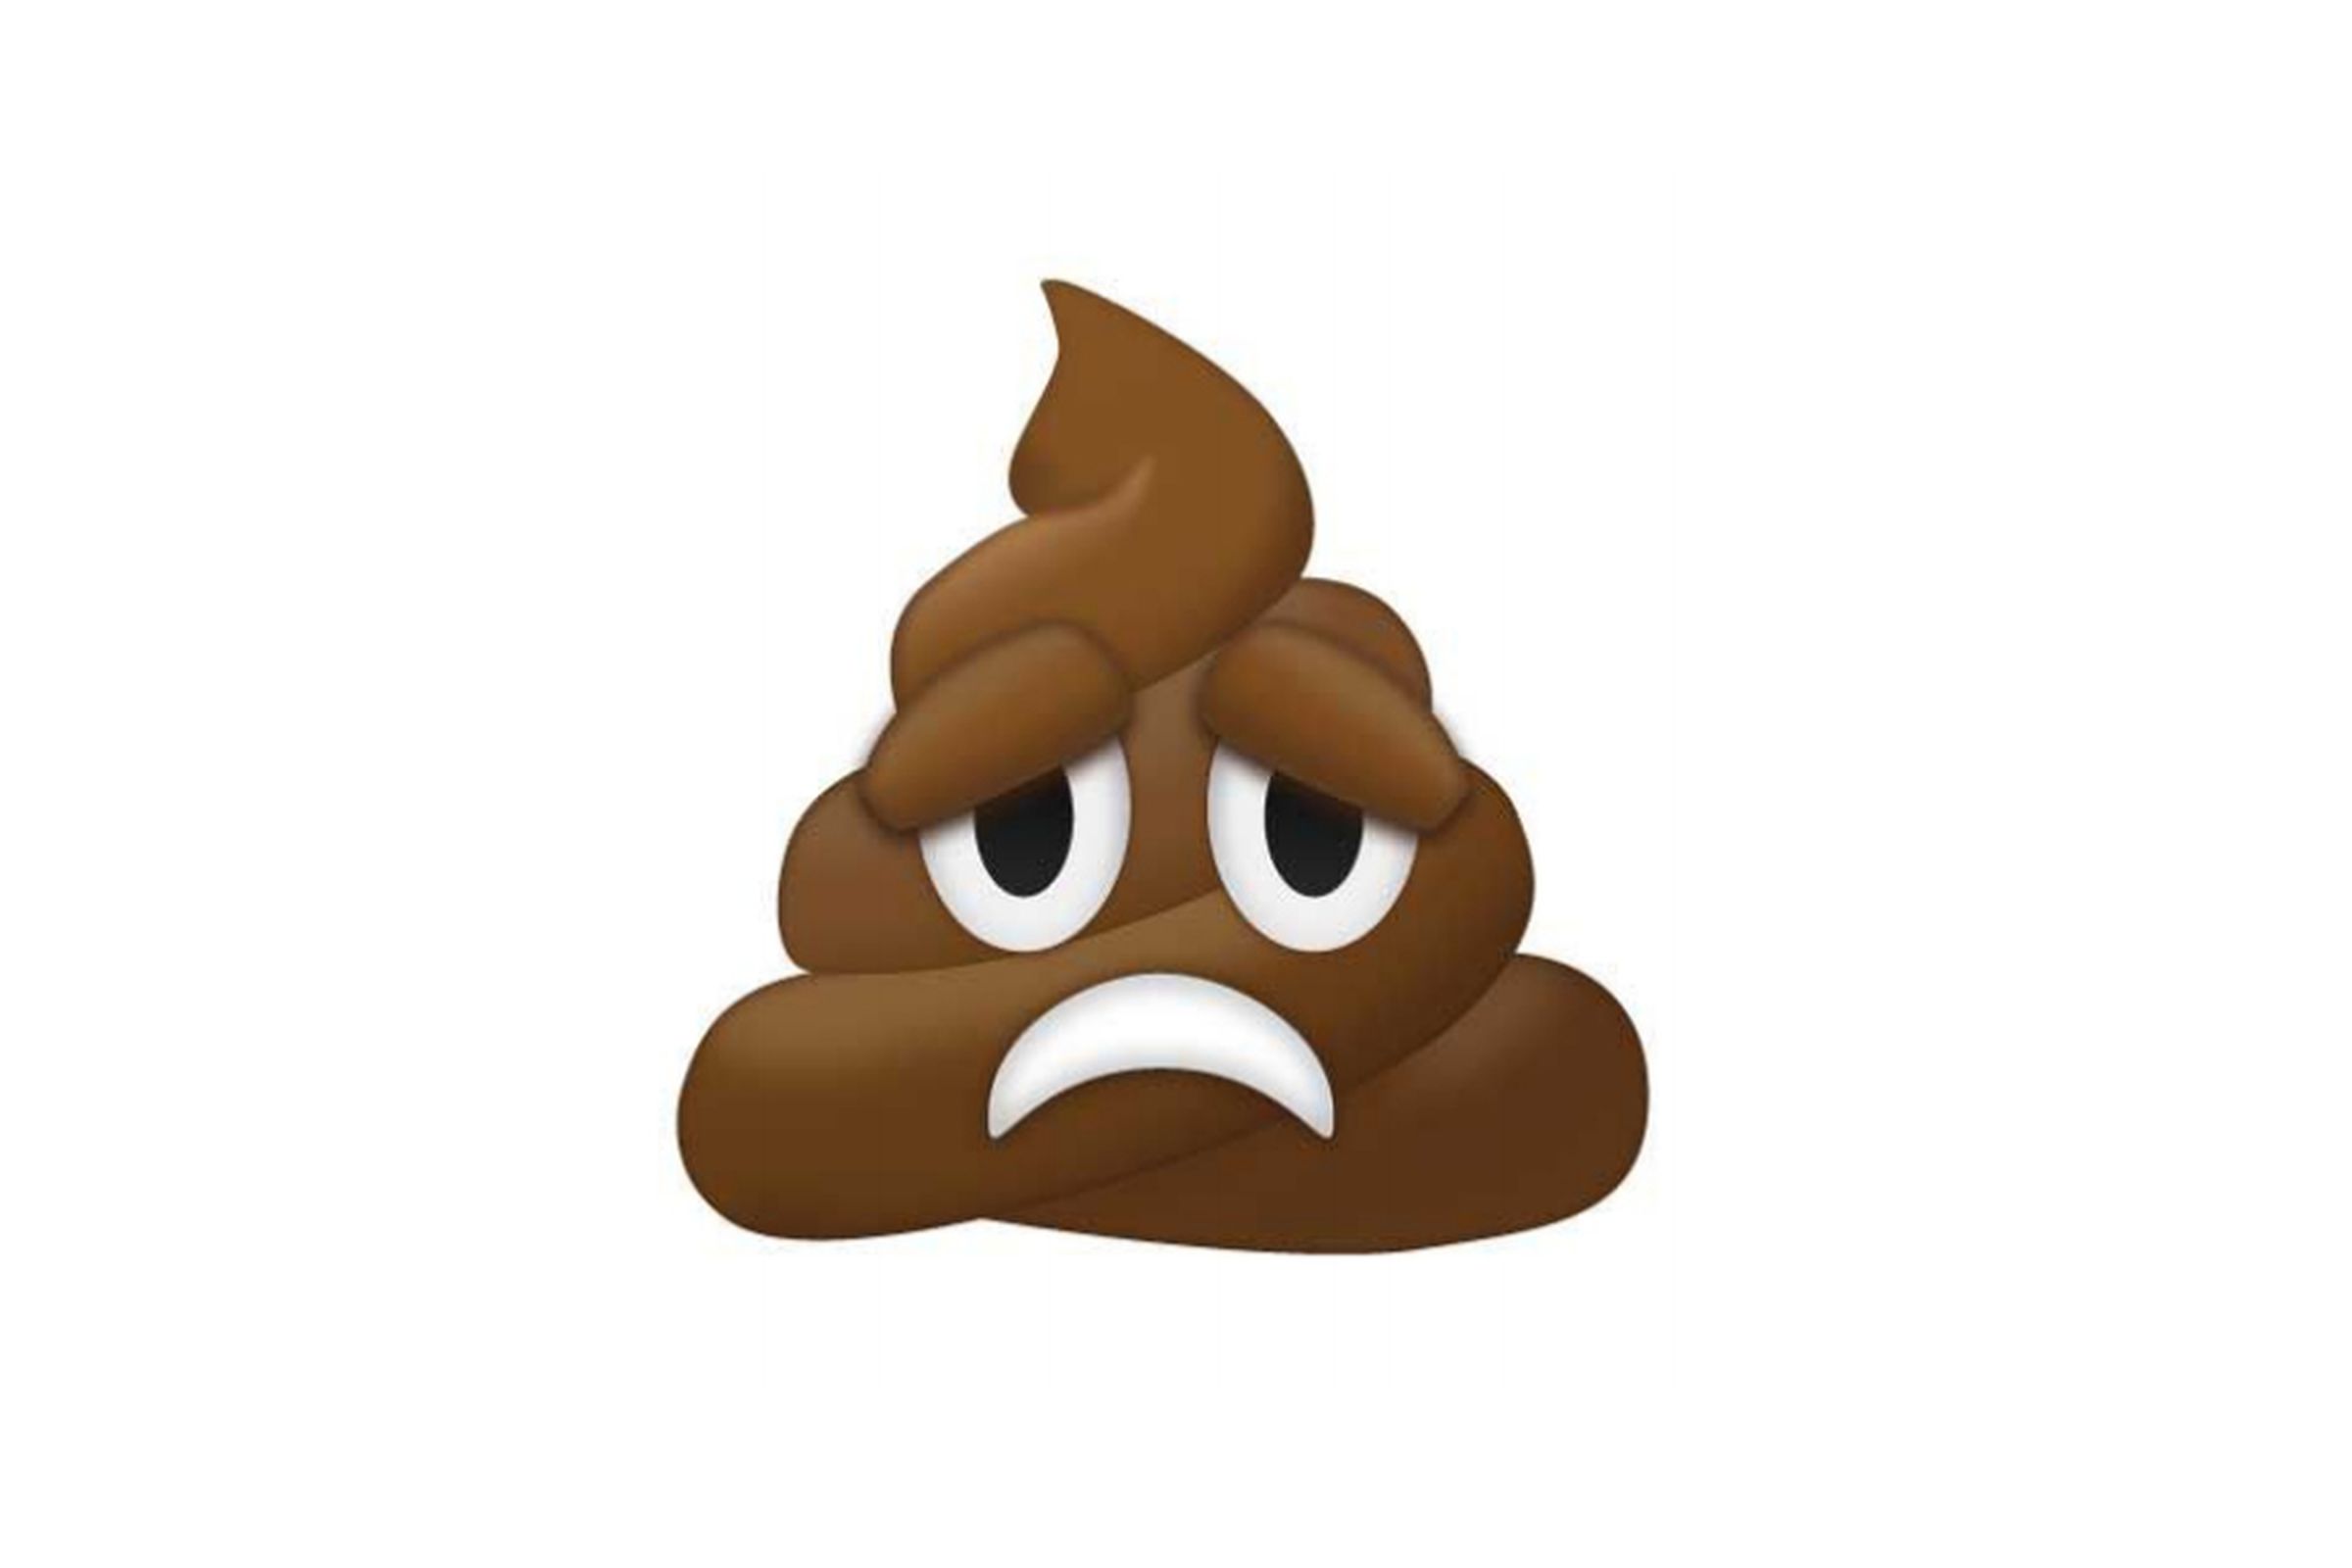 Frowning poo emoji proposal